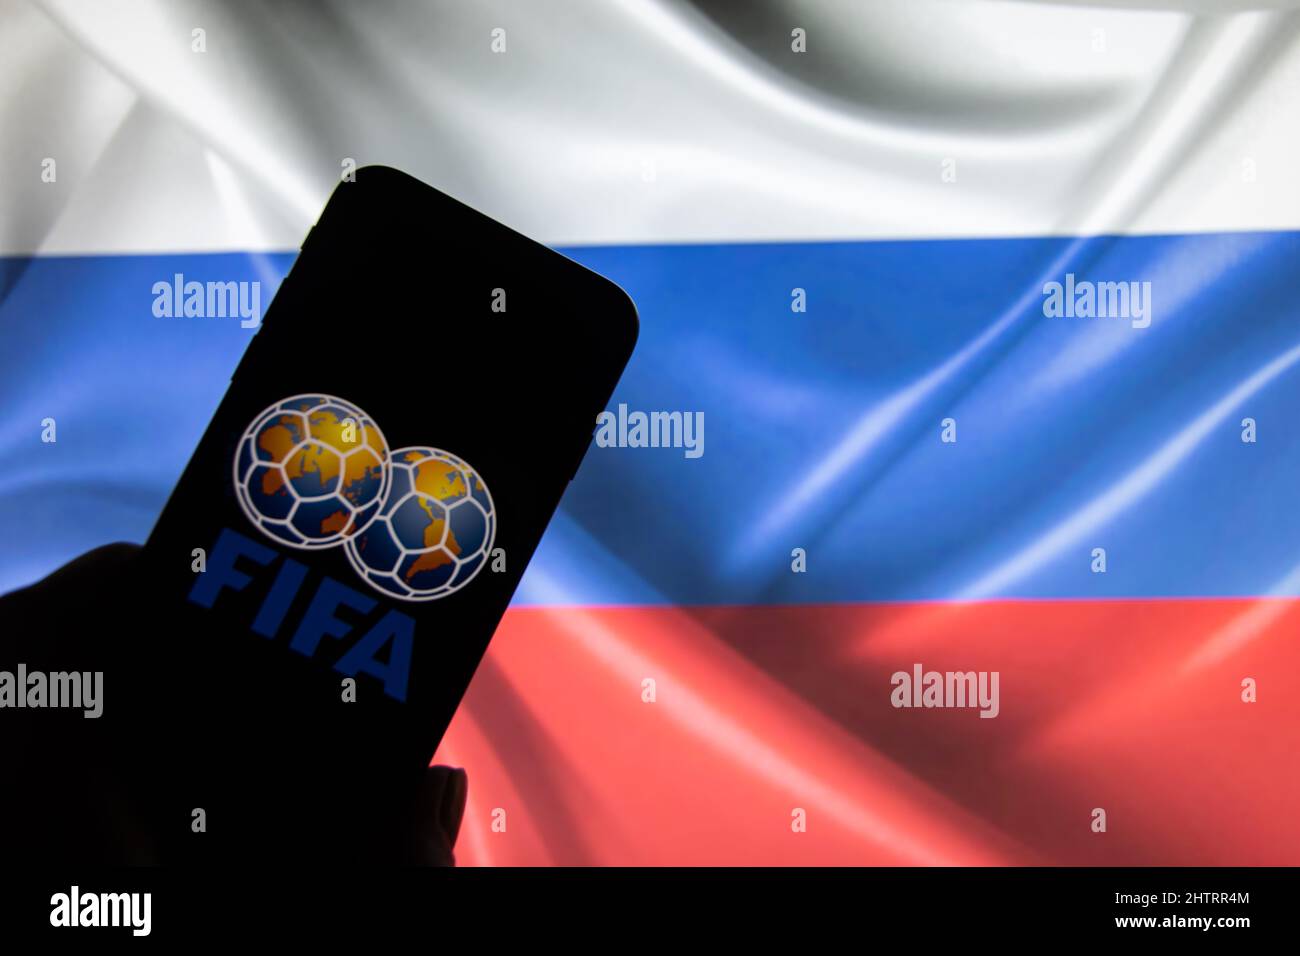 Rheinbach, Allemagne 4 mars 2022, le logo de la marque « FIFA » sur un écran de smartphone devant un drapeau russe (en particulier le logo de la marque) Banque D'Images